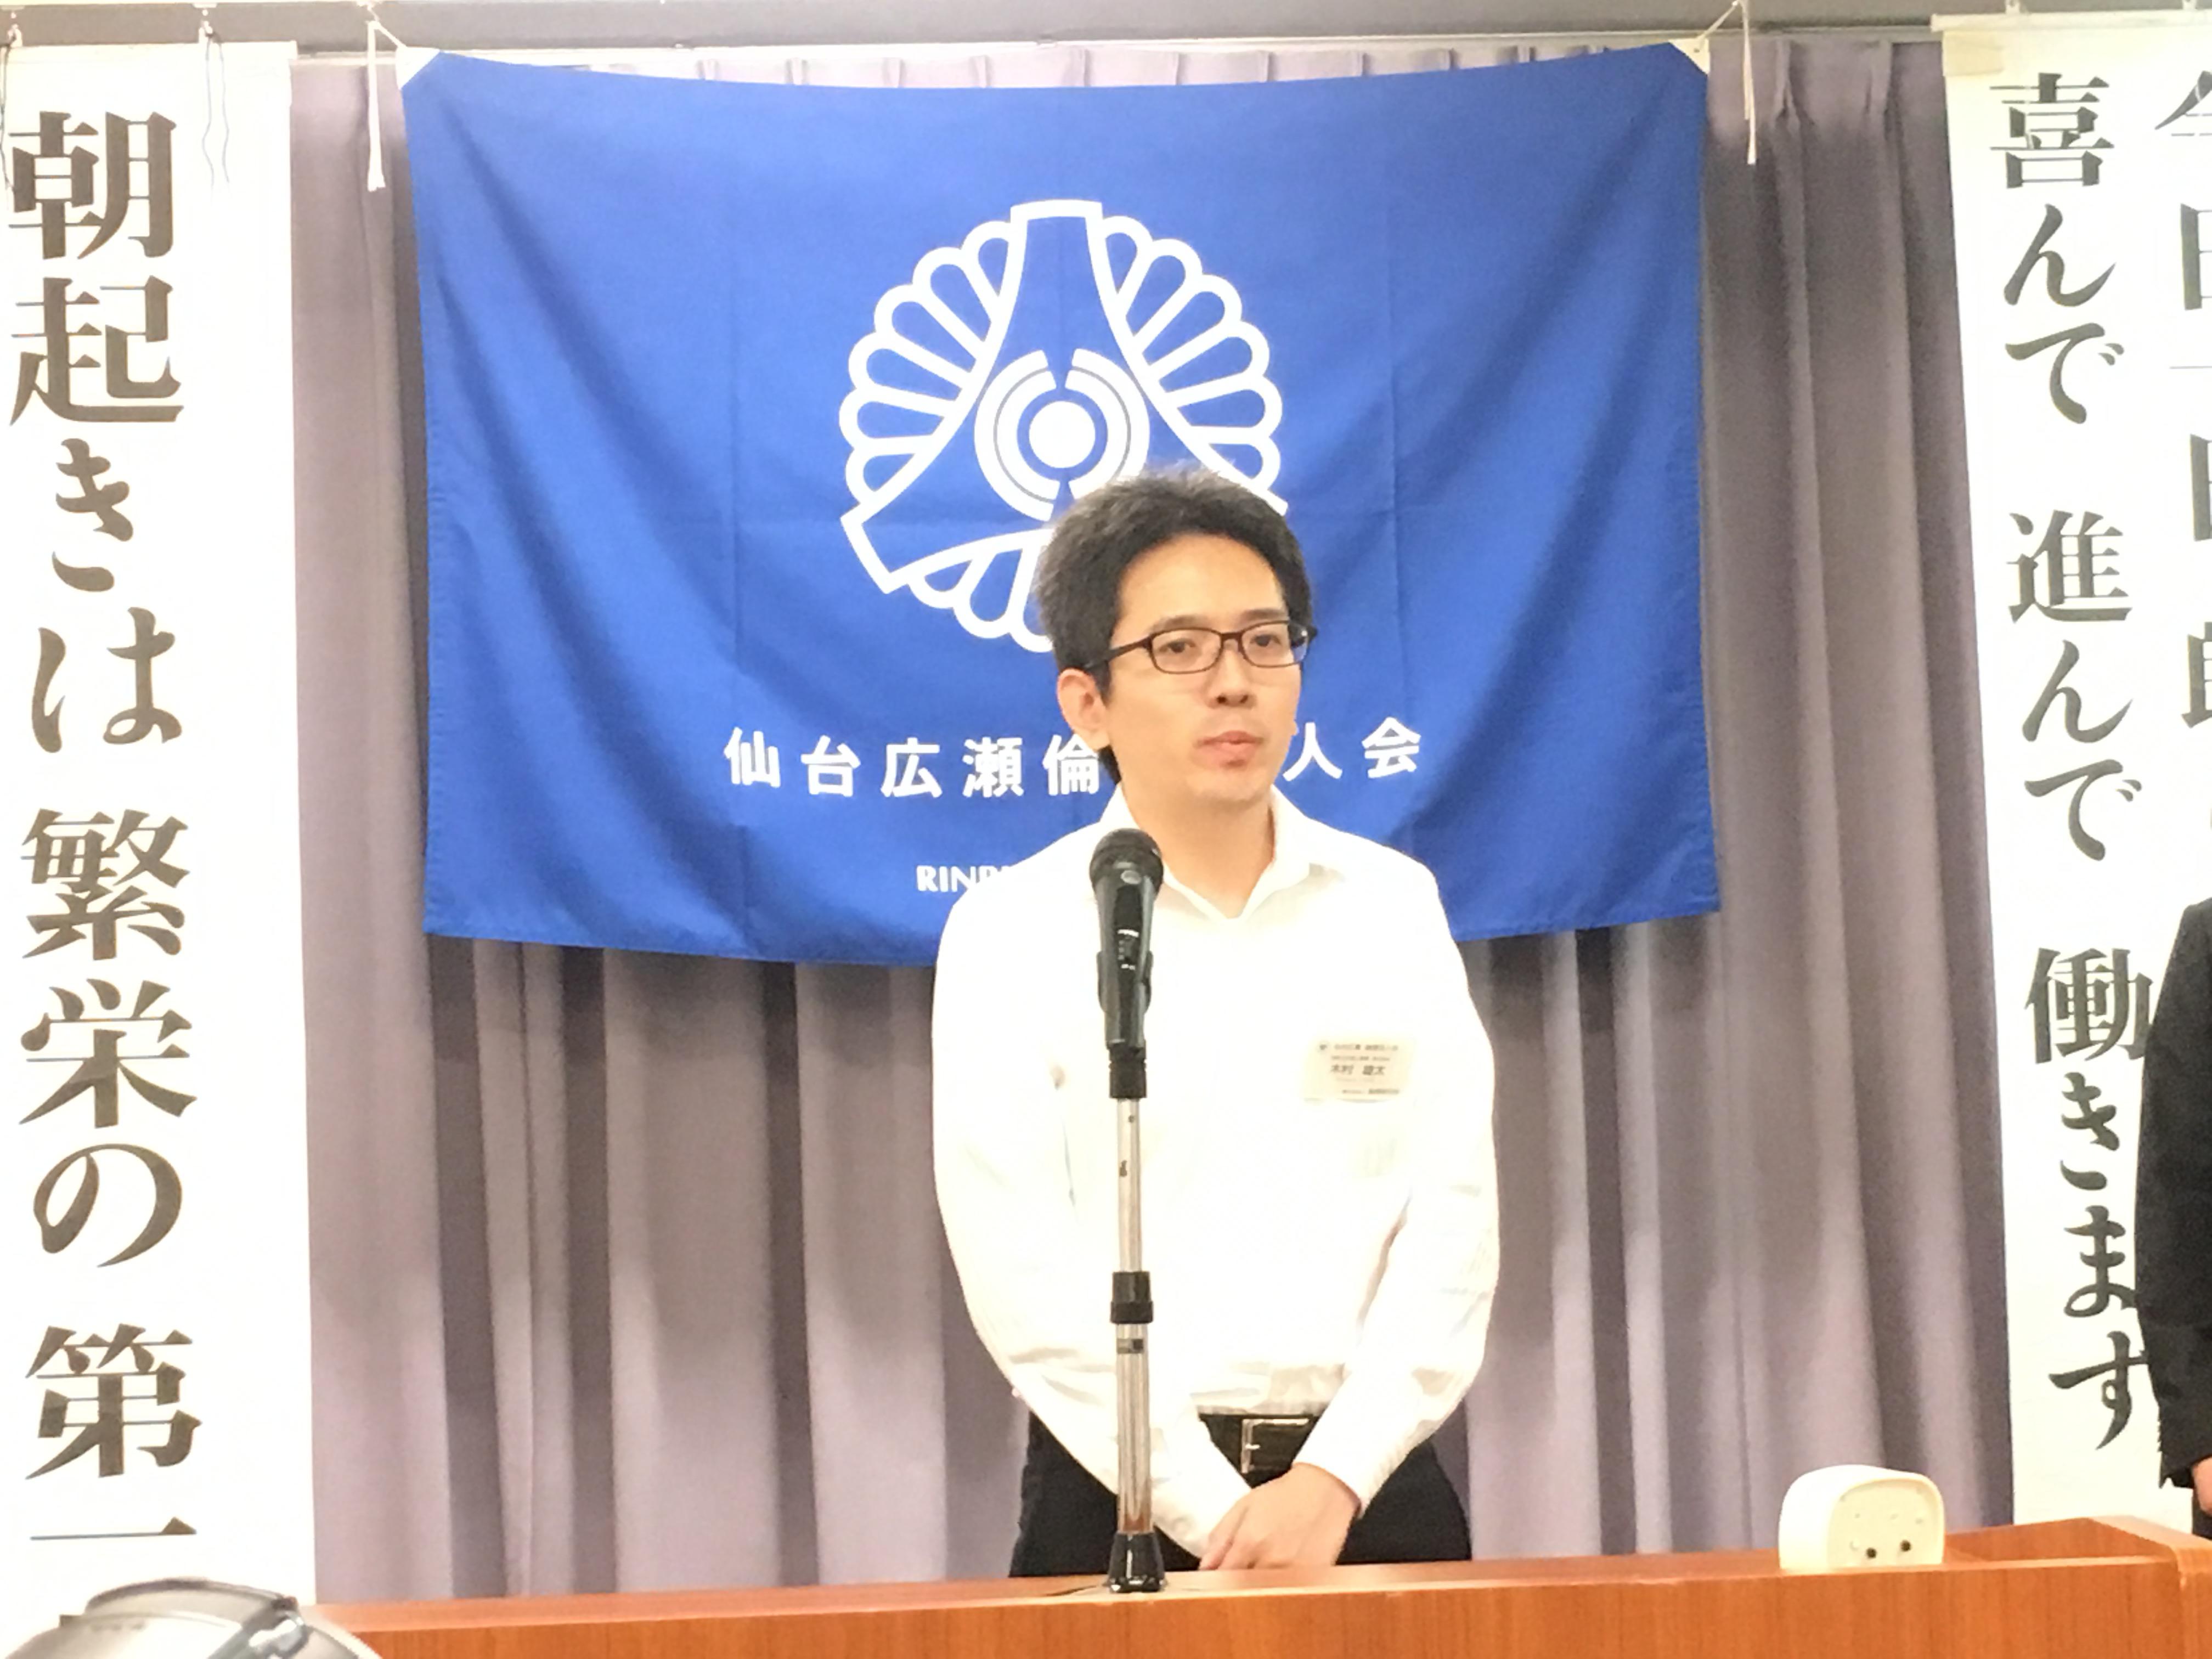 木村雄太さん　新入会員　名札授与式